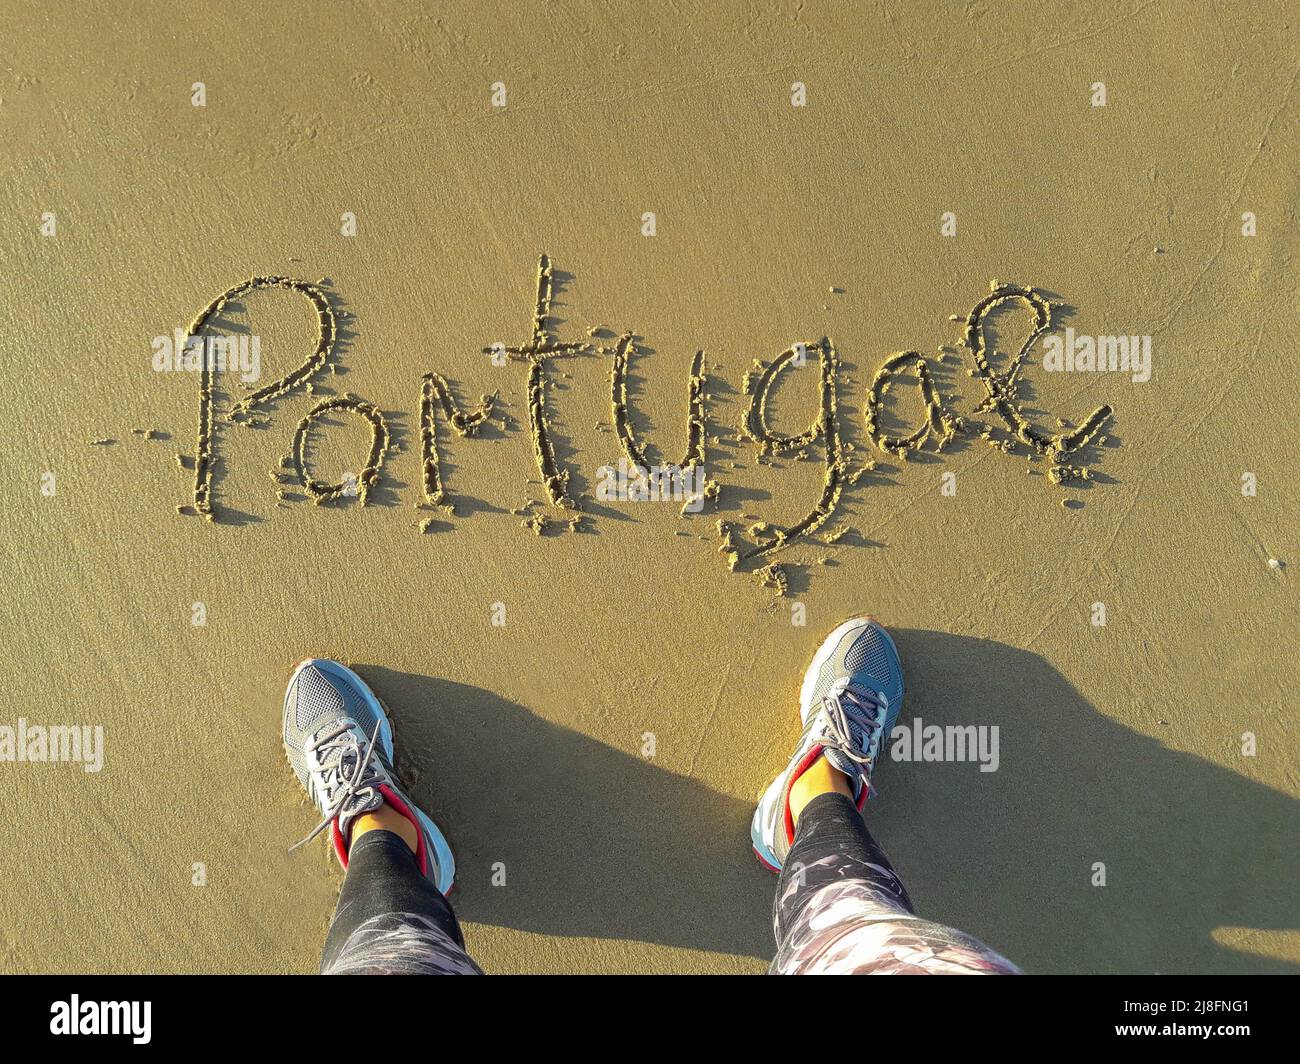 Portugal en la arena texto escrito a mano. pies desde arriba en una playa Foto de stock